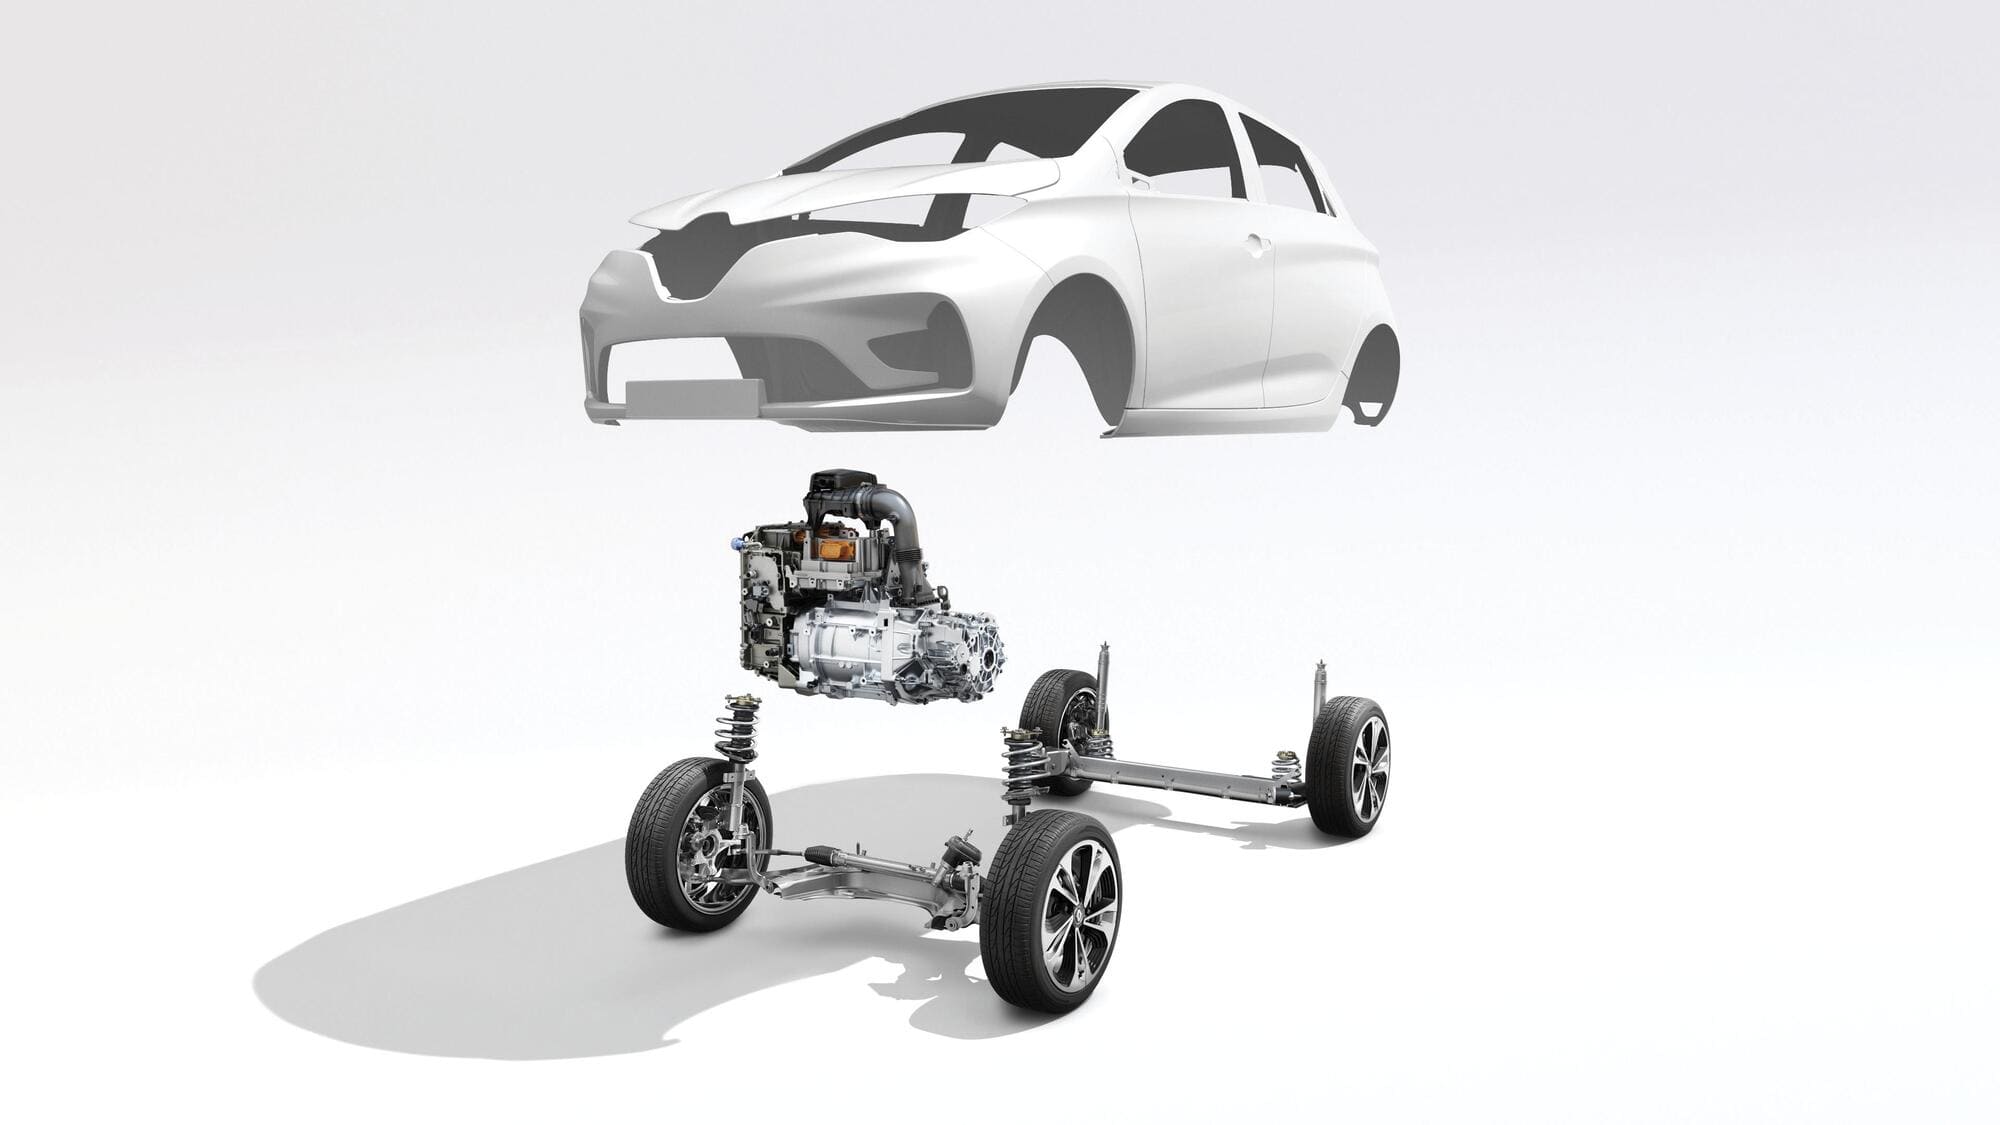 Comment fonctionnent les moteurs des véhicules électriques? – Renault